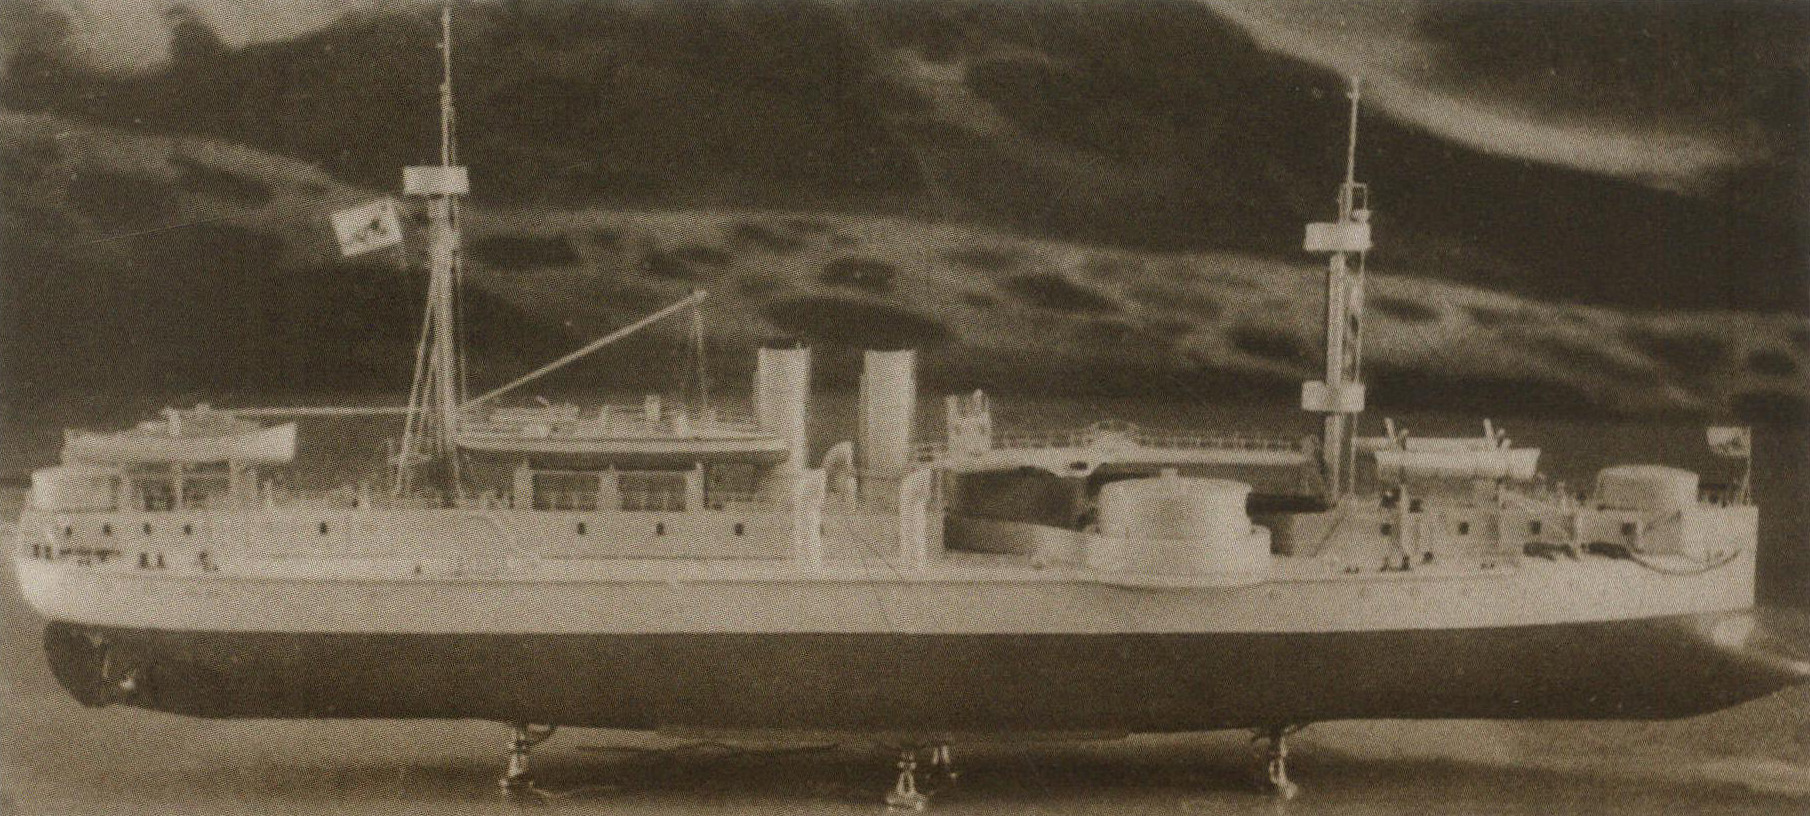 “定远”铁甲舰(模型)。排水量7335吨，主炮口径305毫米，是北洋舰队的旗舰